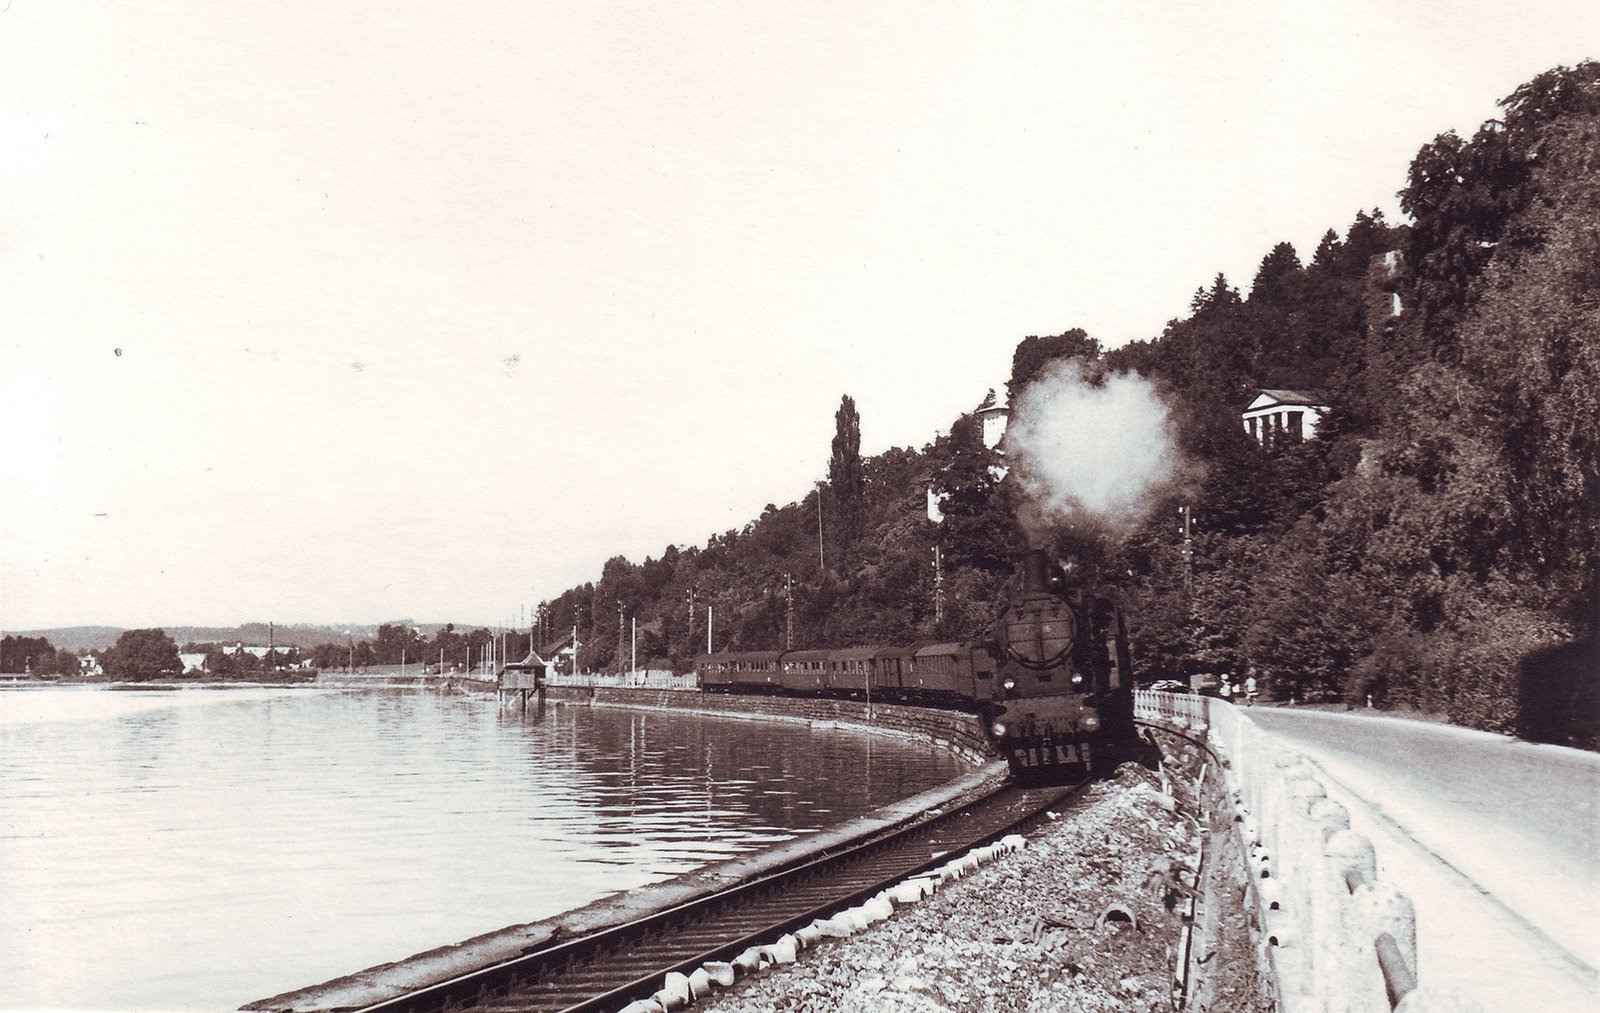 Blick auf einen Zug der am See entlangfährt